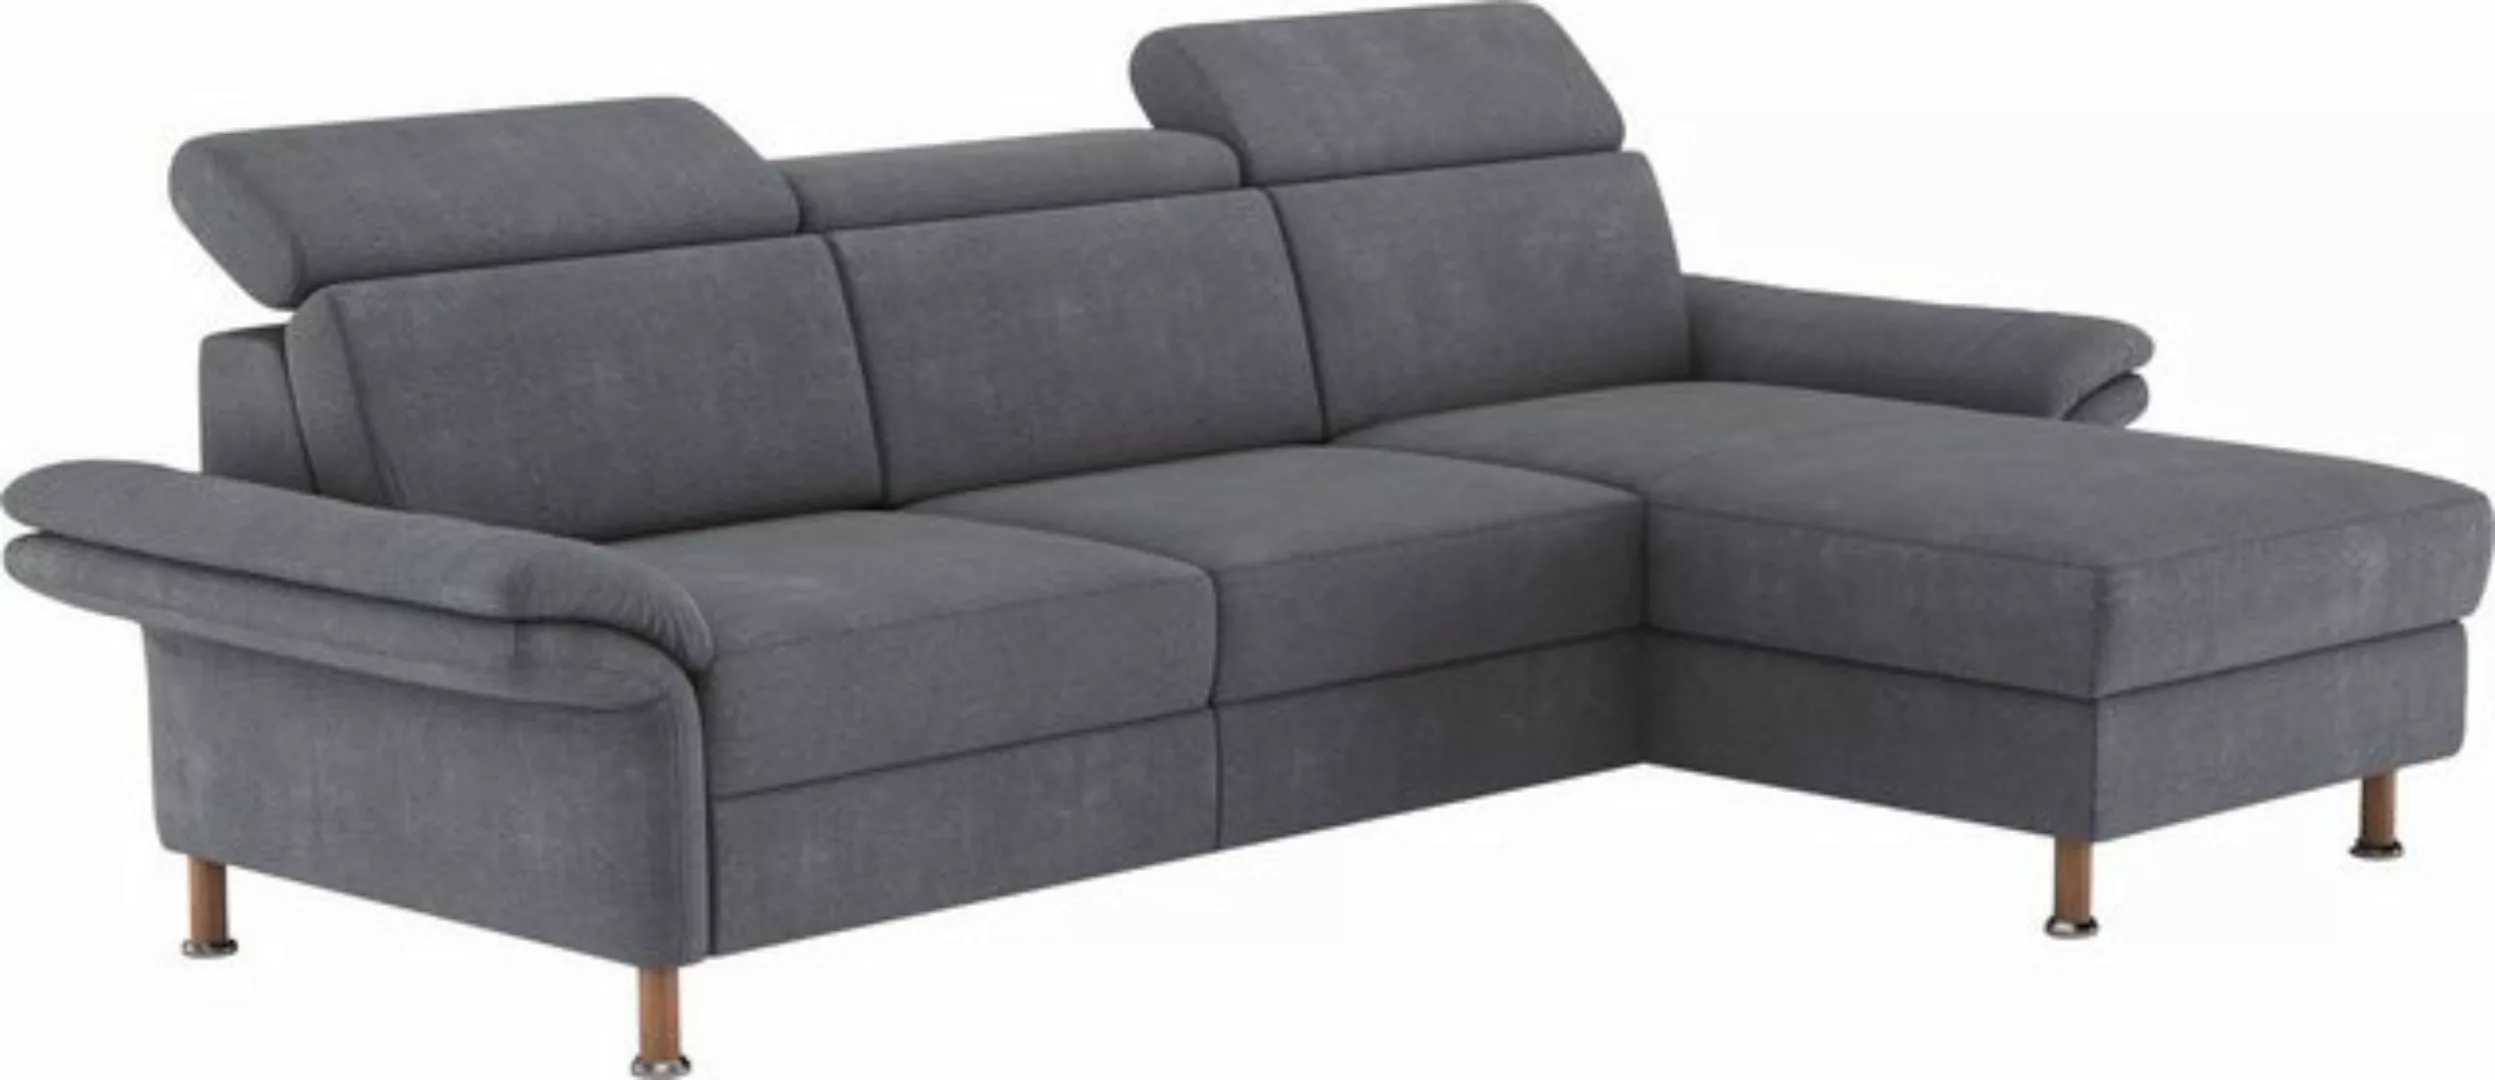 Home affaire Ecksofa Calypso L-Form, mit motorischen Funktionen im Sofa und günstig online kaufen